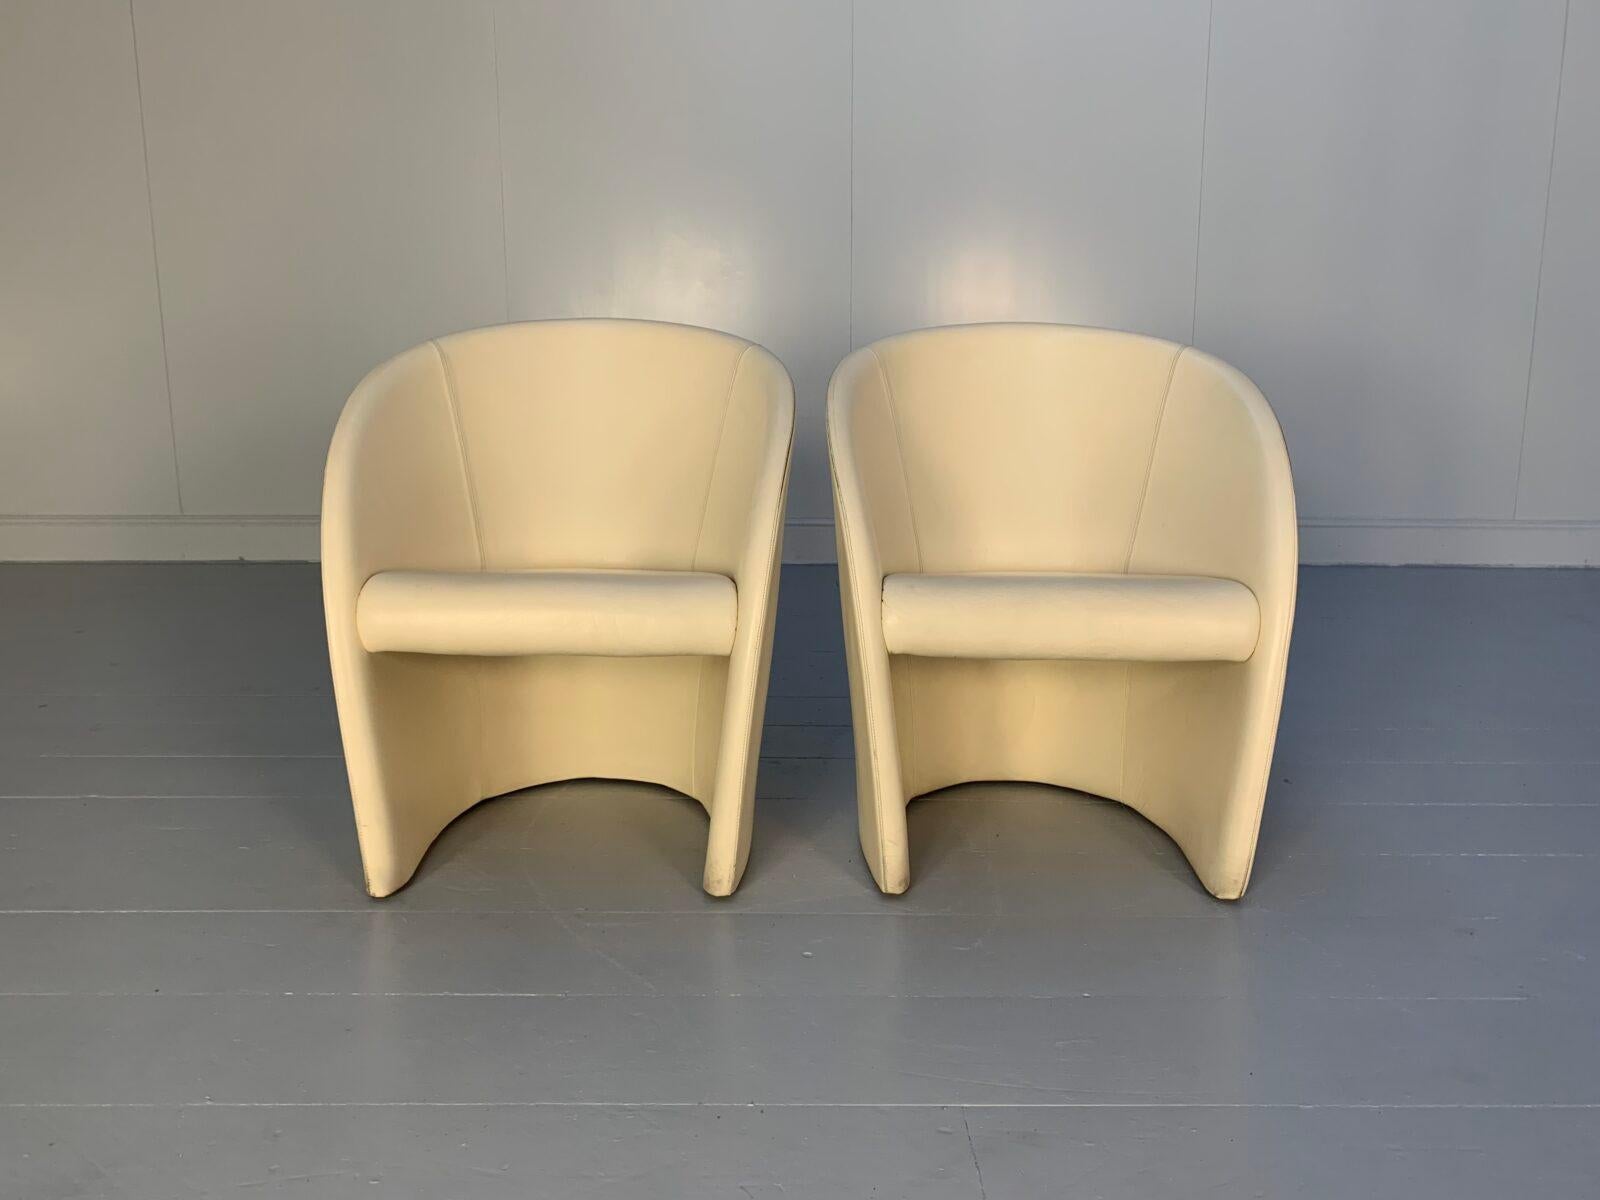 Nous vous proposons une rare paire identique de fauteuils 